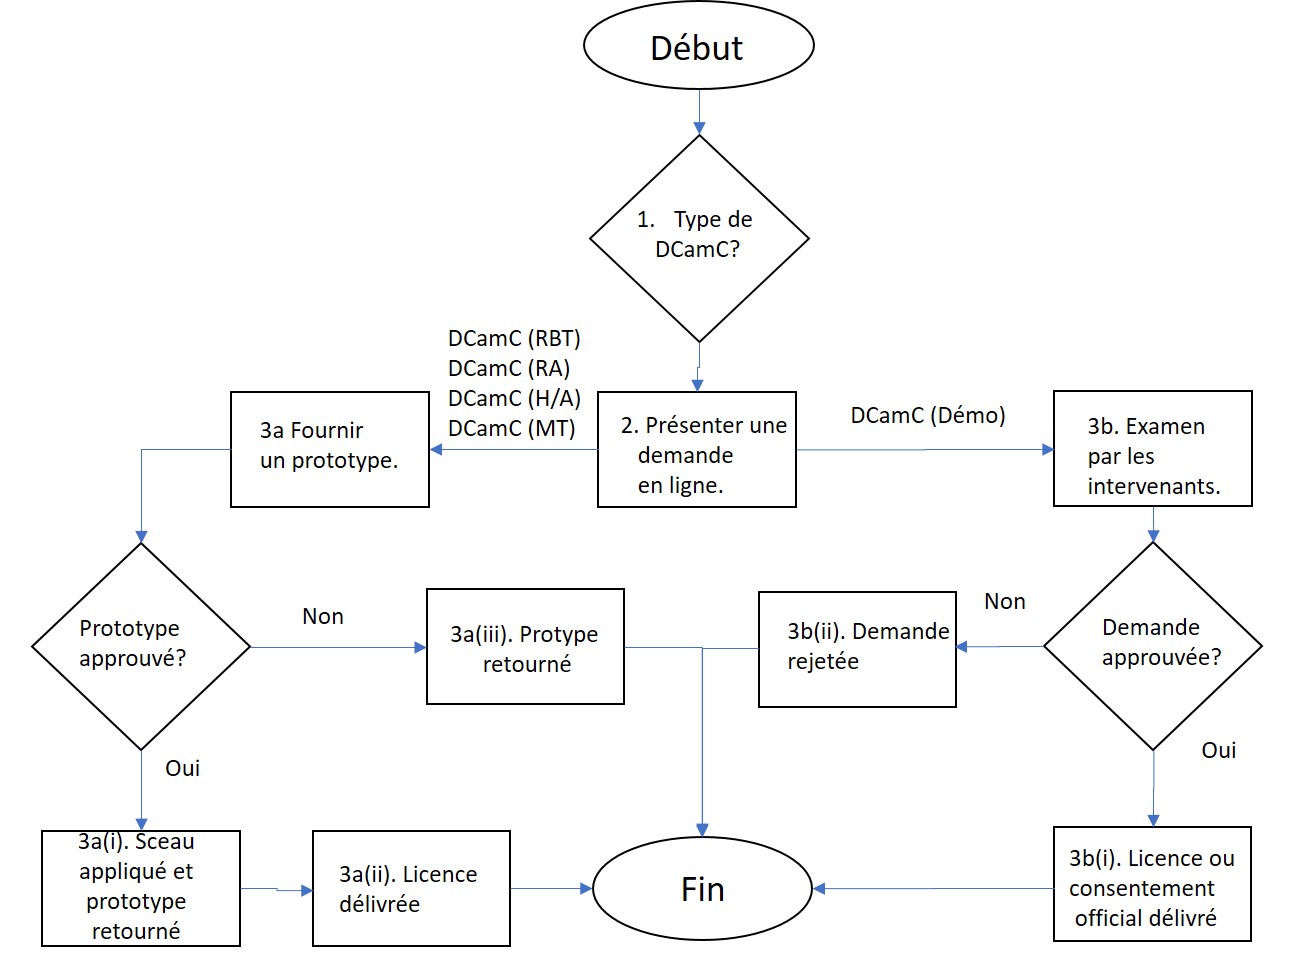 Diagramme du processus d’approbation et étapes de la procédure pour présenter une demande d’utilisation du DCamC